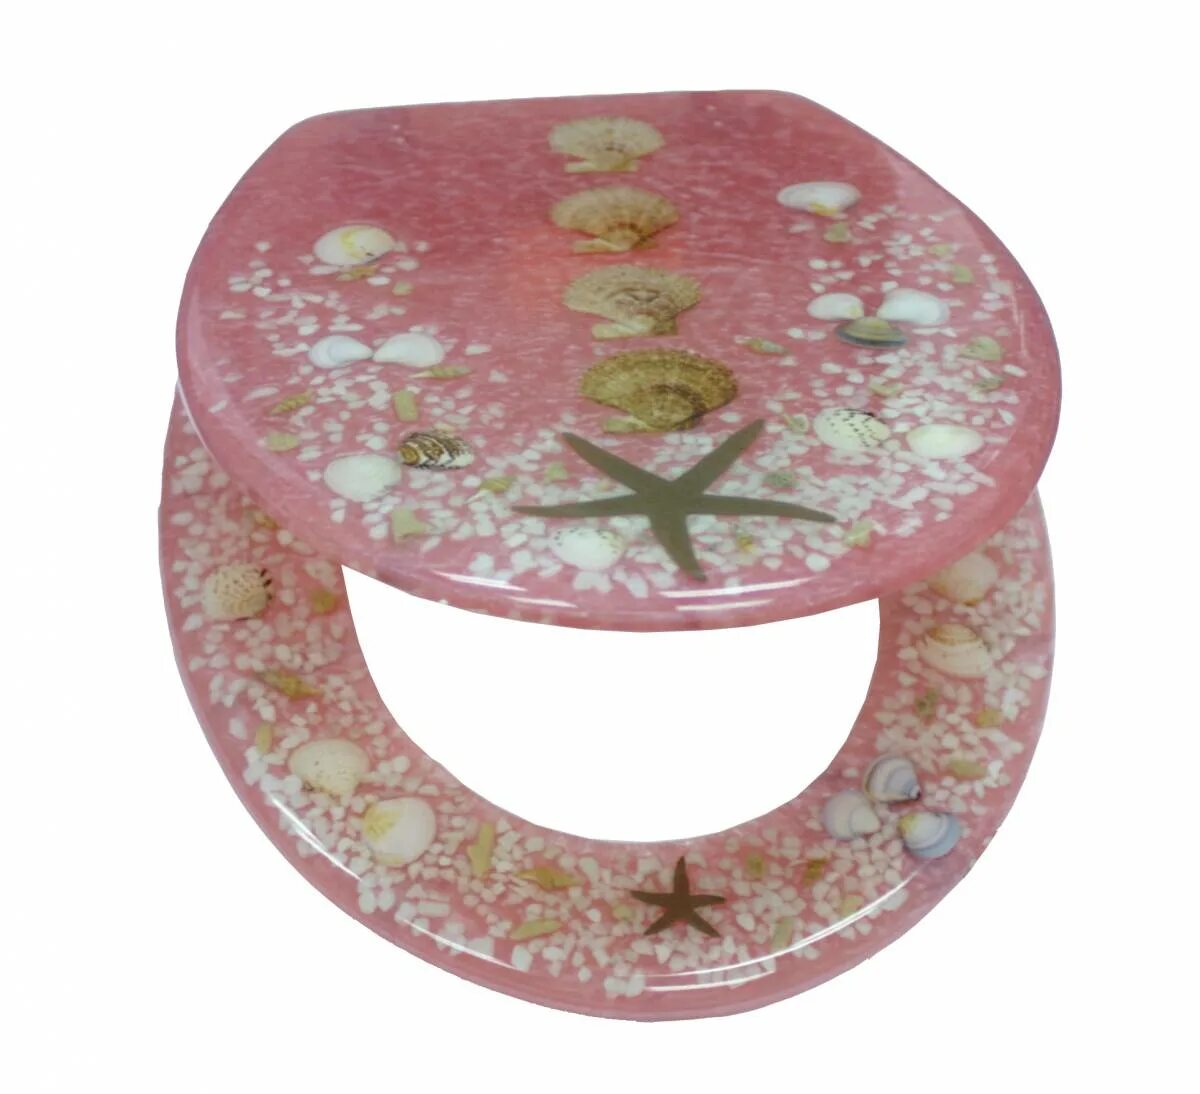 Сиденье для унитаза Koral a. Меховой стульчак для унитаза розовый. Сиденье для унитаза из оргстекла. Сиденье для унитаза розы. Крышки для унитаза роса